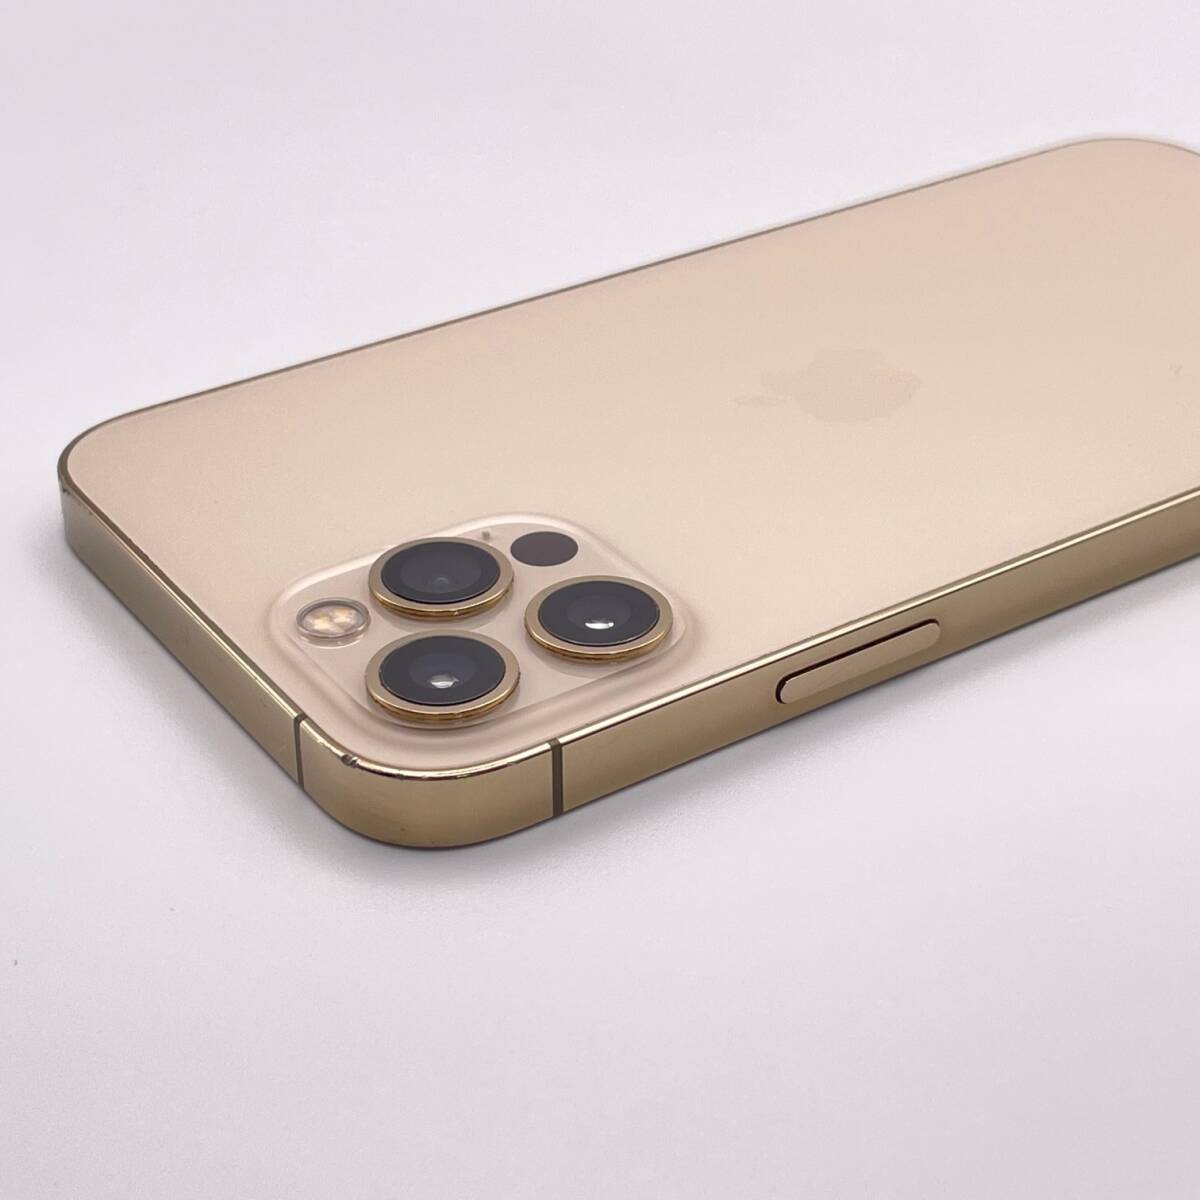  б/у товар Apple Apple iPhone 12 Pro 128GB Gold SIM свободный 1 иен из распродажа 